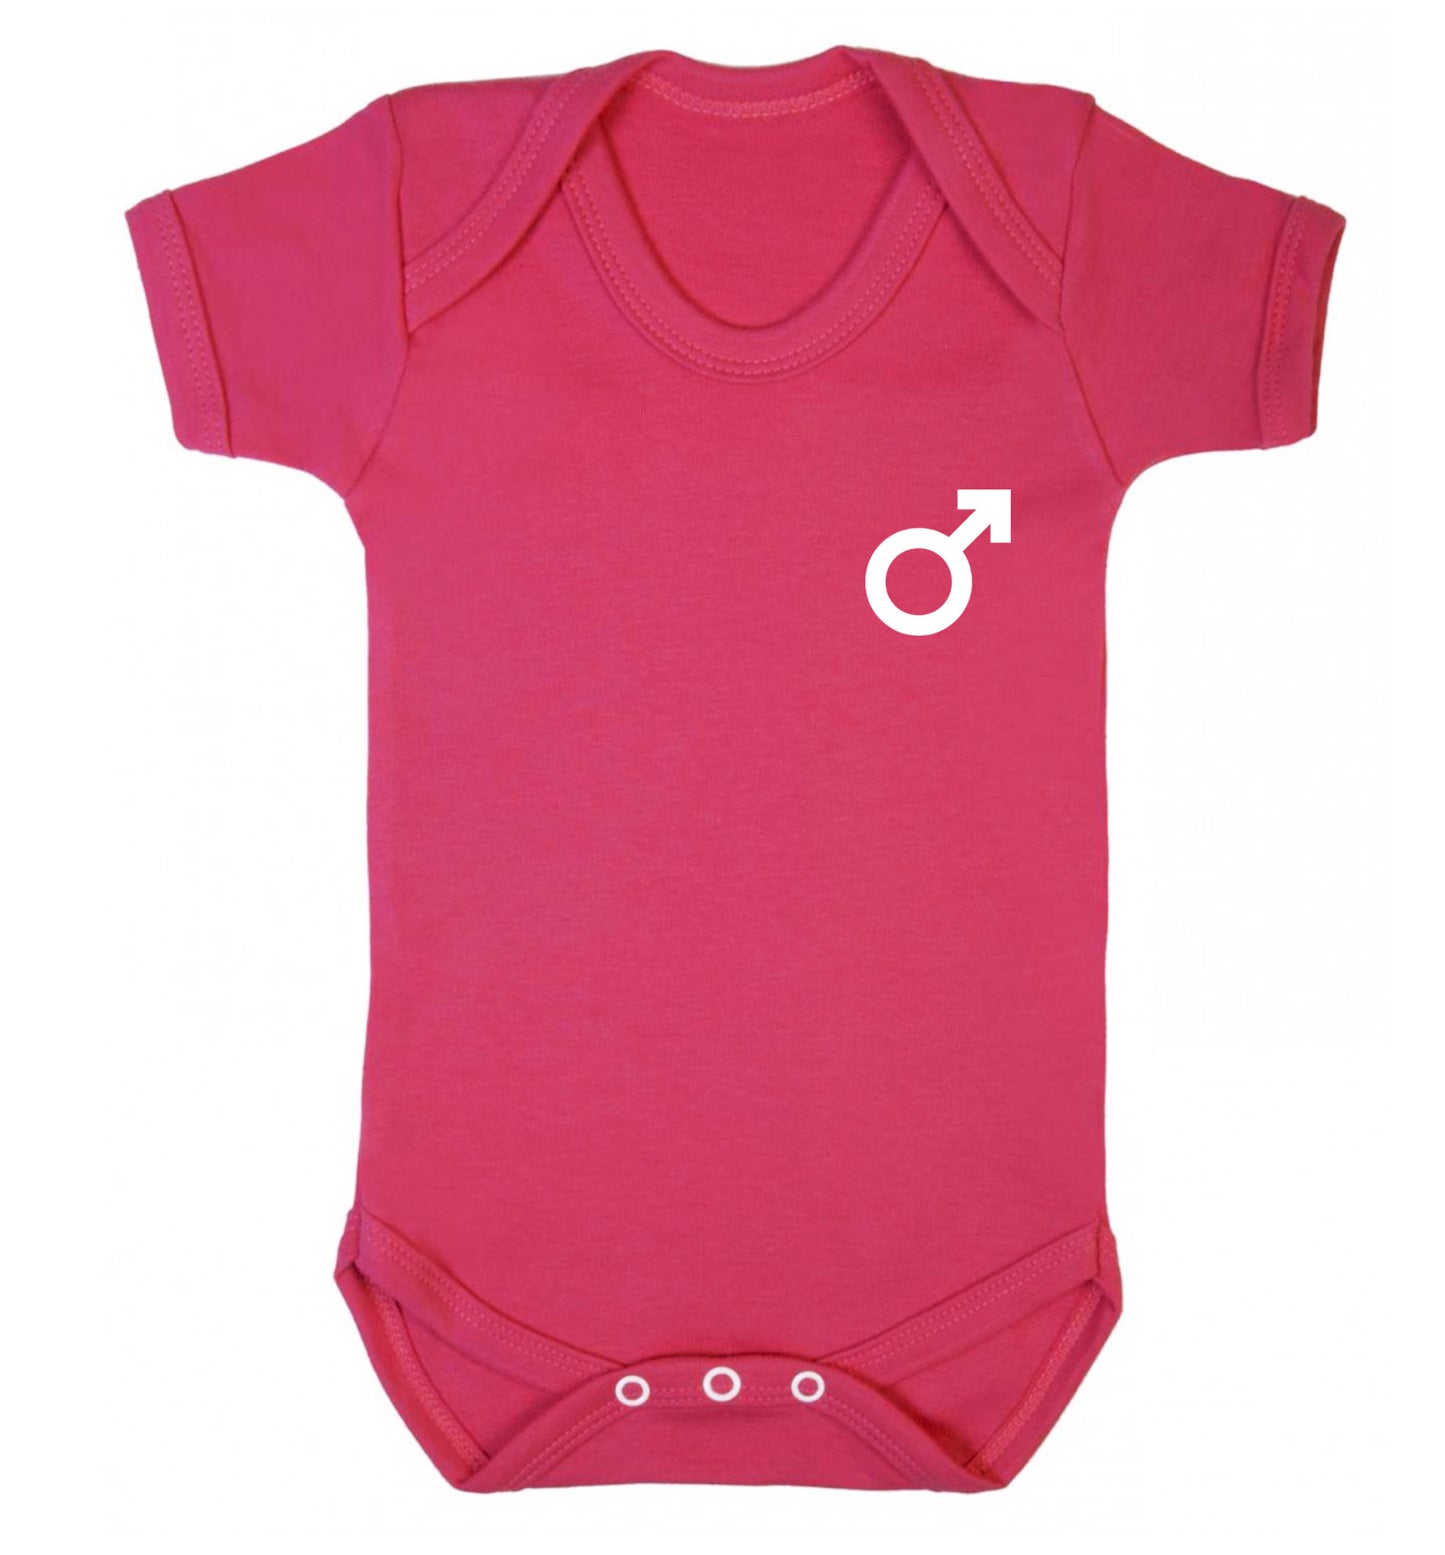 Male symbol pocket Baby Vest dark pink 18-24 months